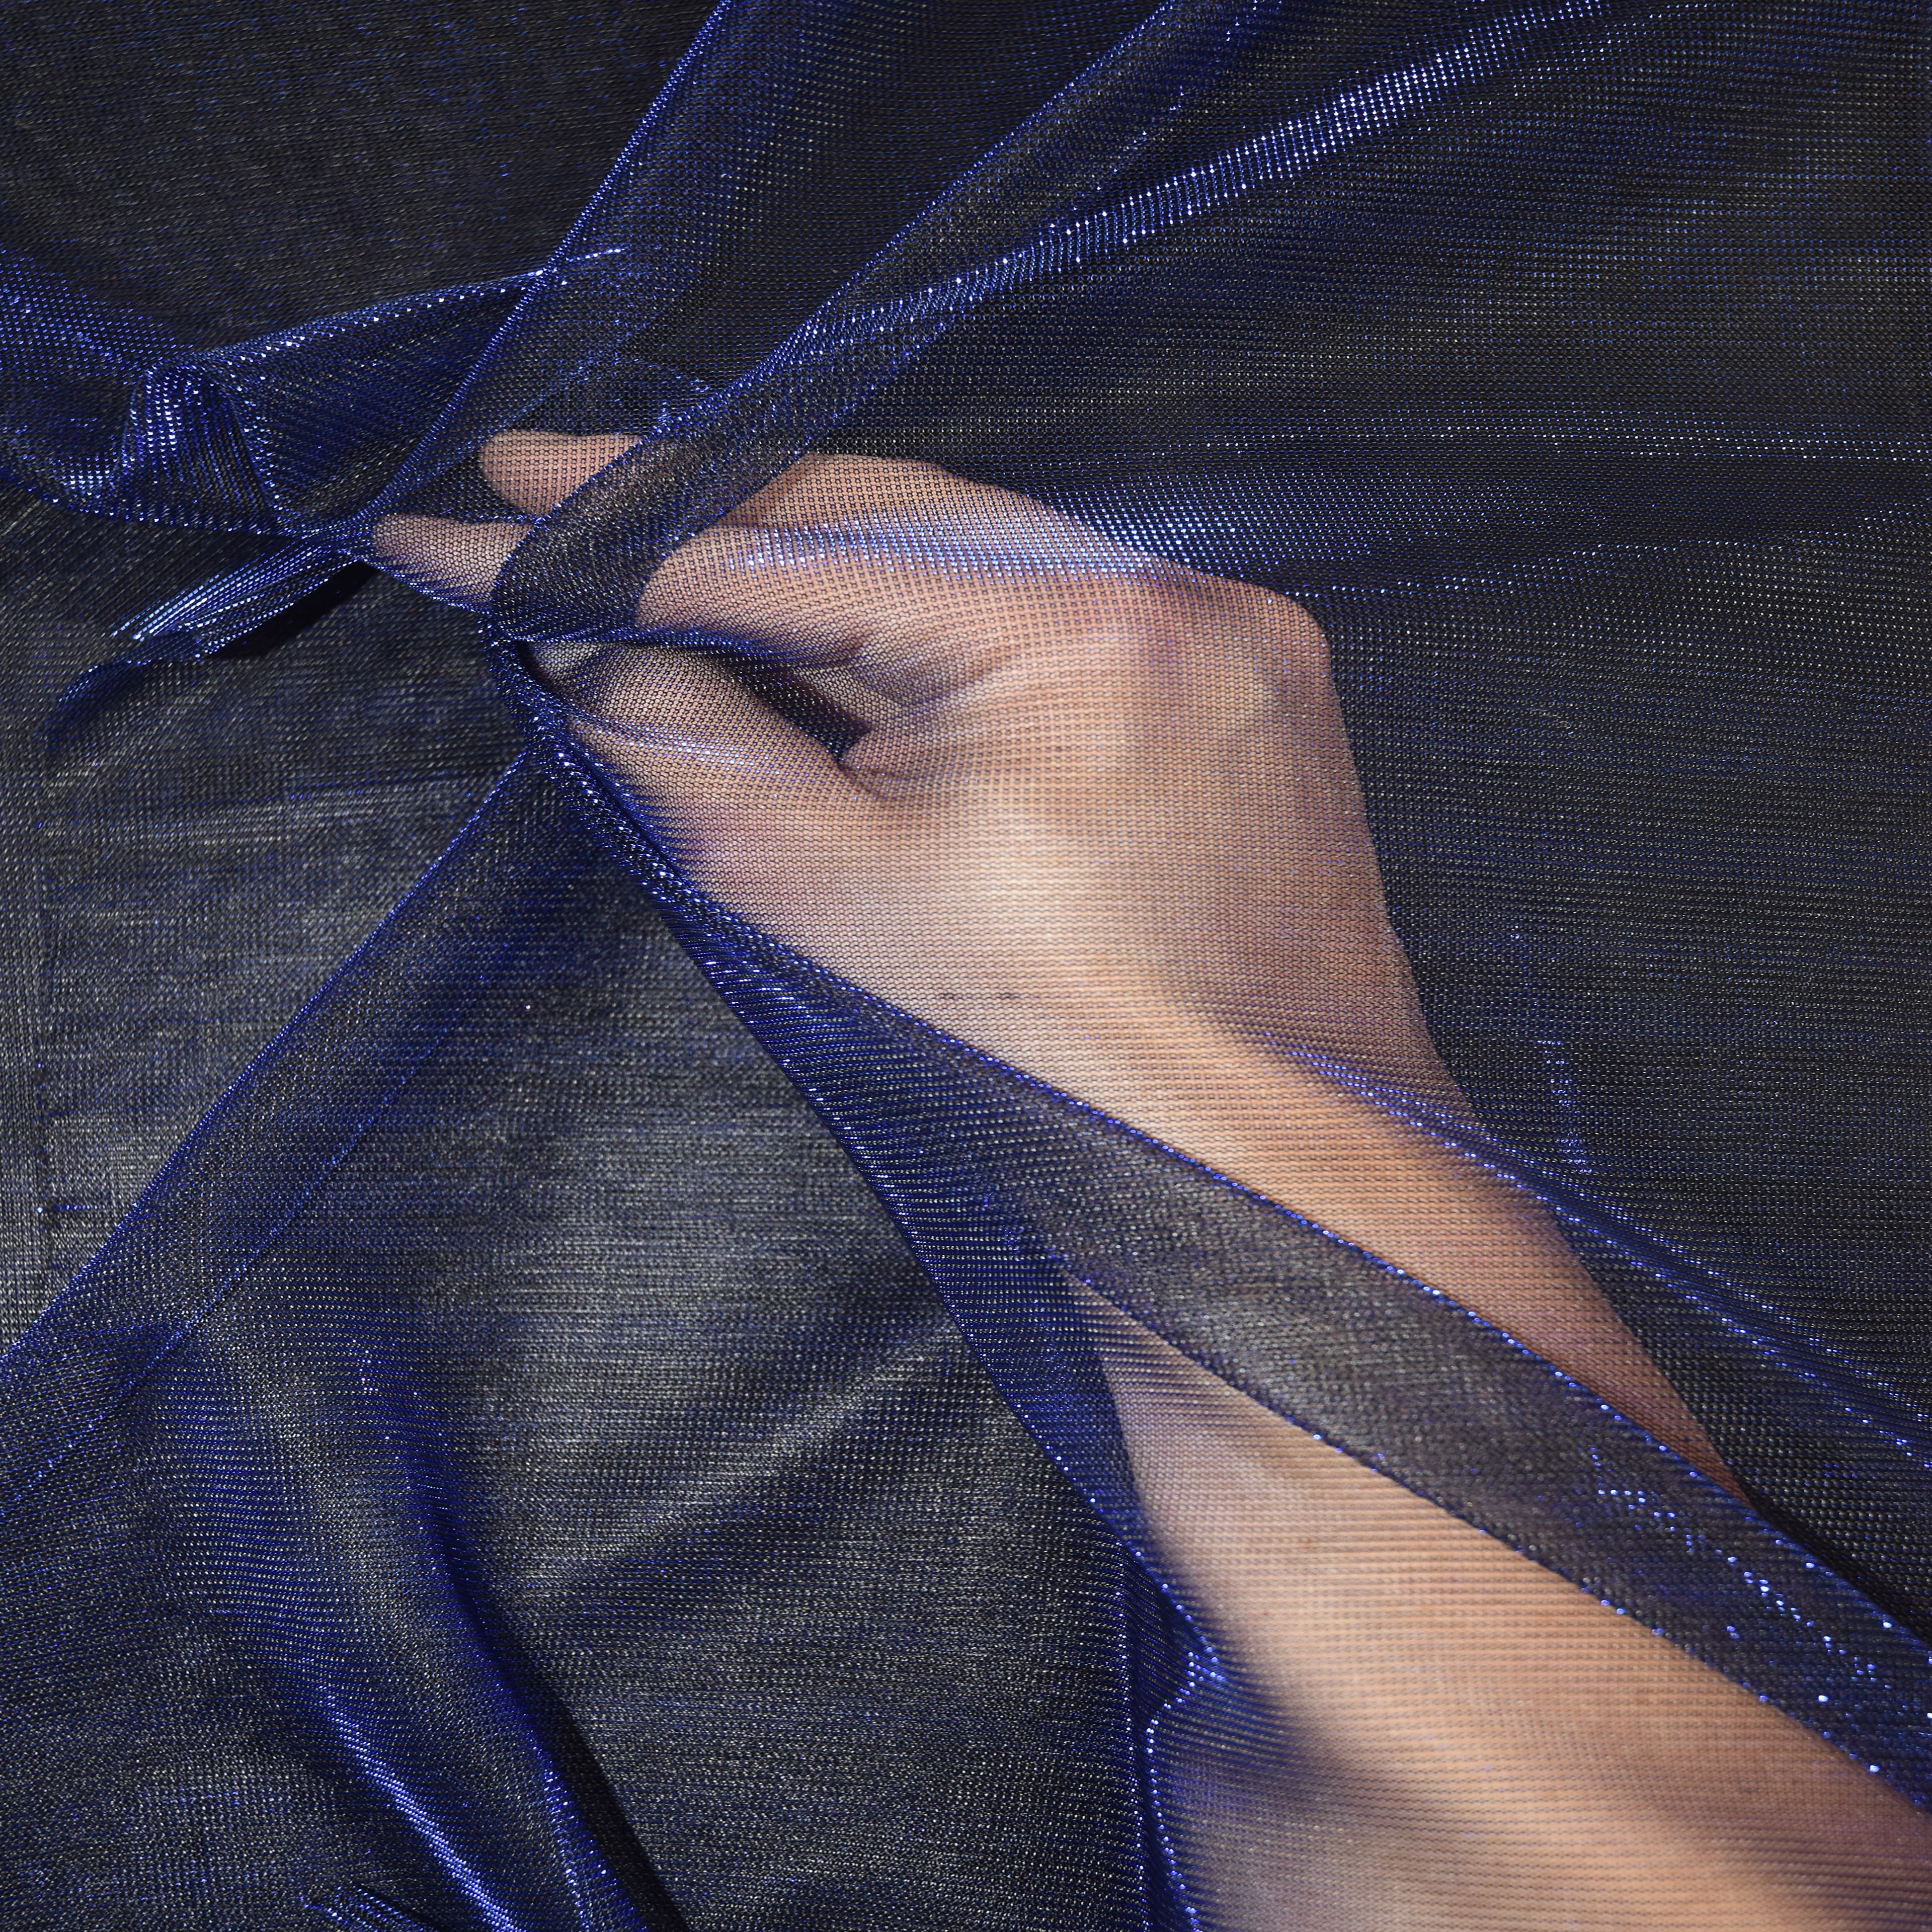 Feldman Blue Metallic Knit Fabric